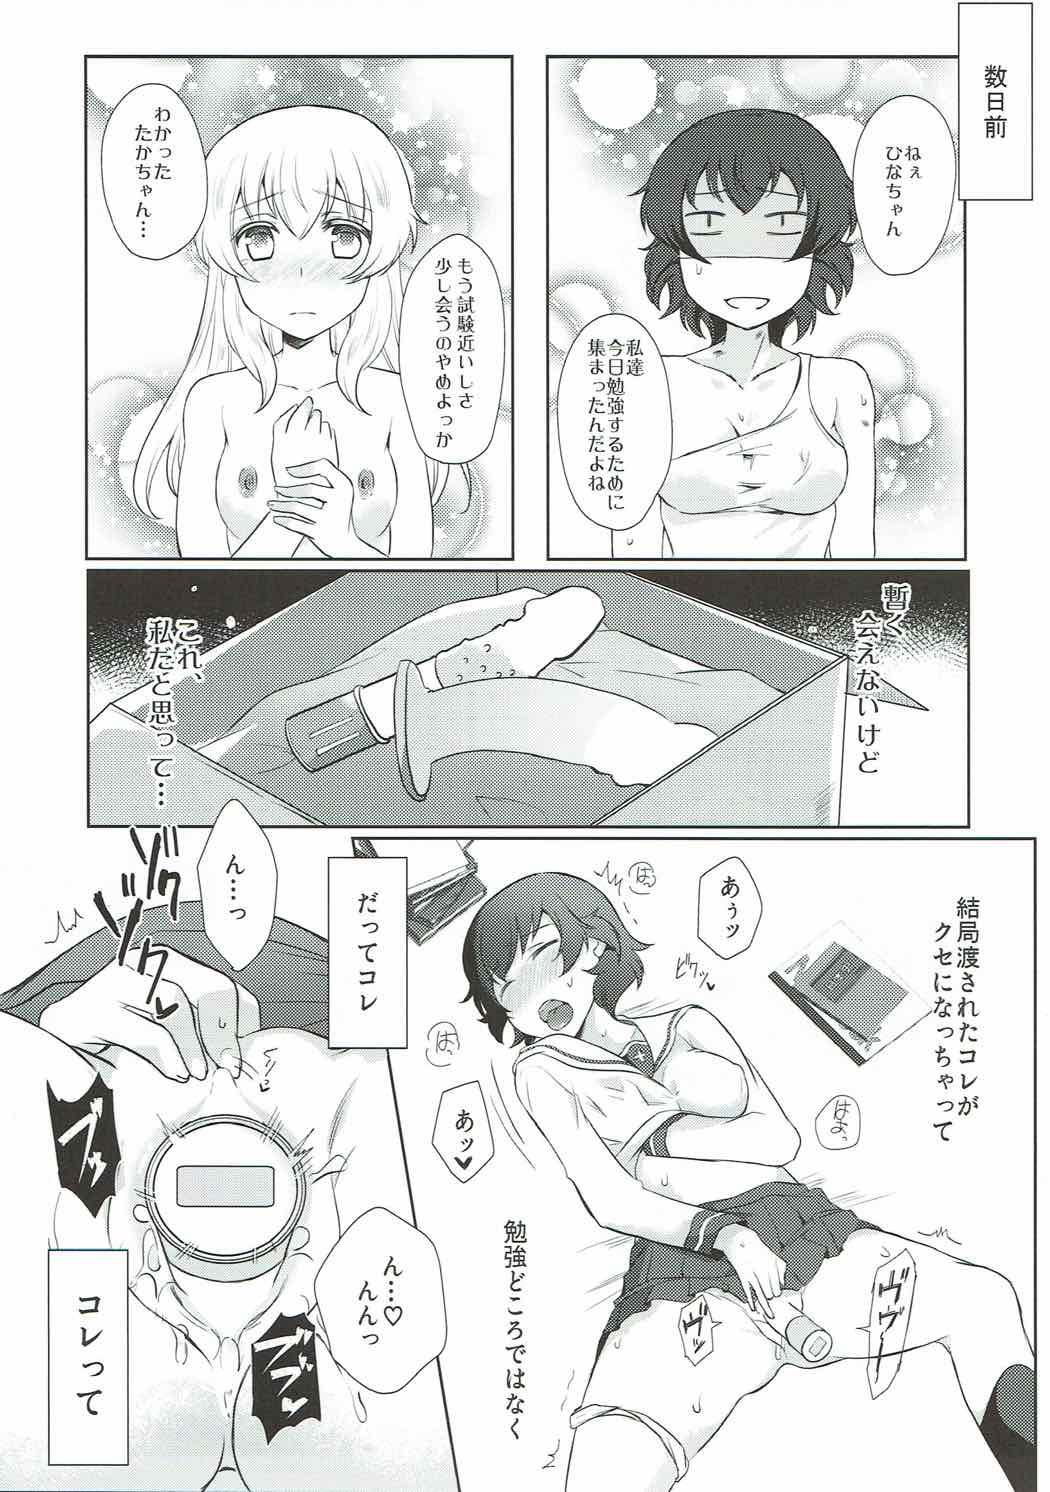 Parody Dakara Watashi wa Sotsugyou dekinai! - Girls und panzer Amature Porn - Page 4